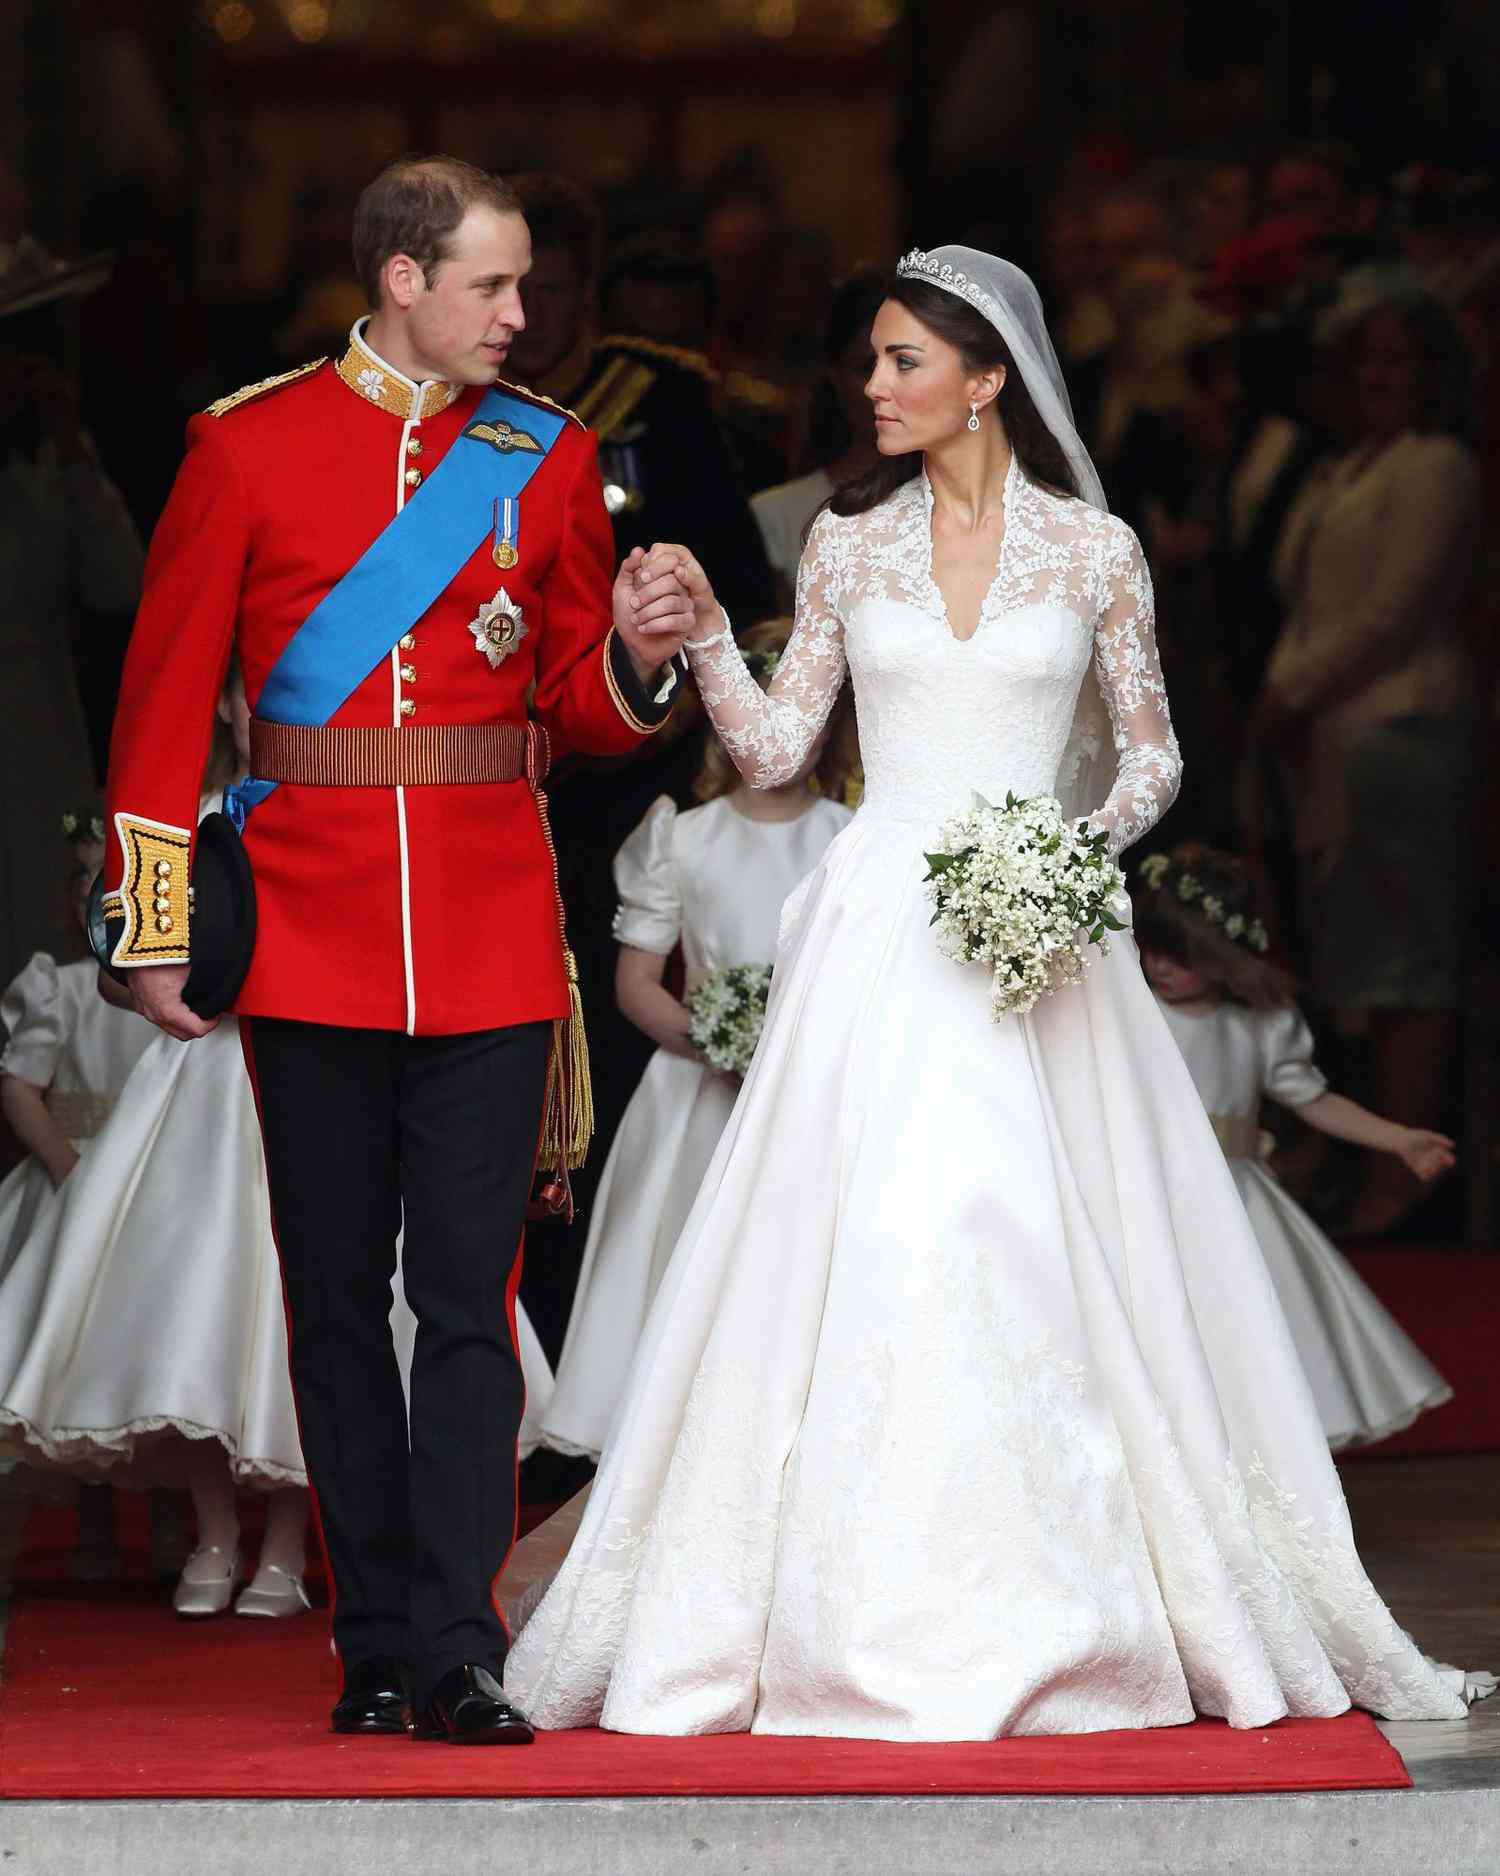 royal-wedding-dress-kate-middleton-113266472-1115.jpg